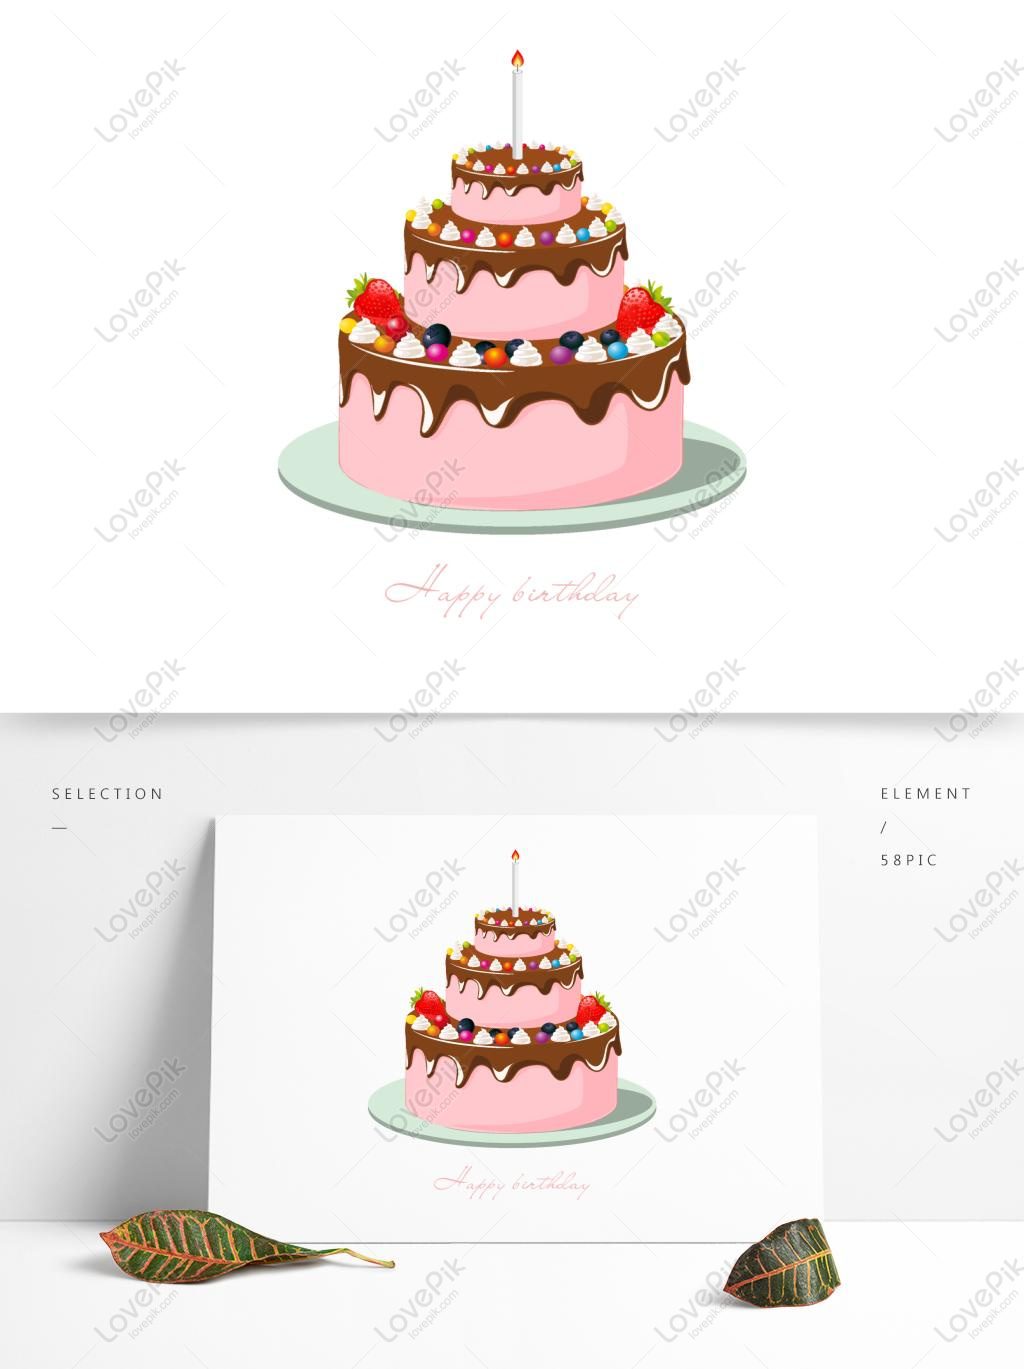 Cùng trân thành chúc mừng sinh nhật bạn bè và người thân của mình với hình ảnh nền trong suốt CDR bánh kem dâu sinh nhật với các yếu tố thương mại. Với hình ảnh thiết kế độc đáo này, bạn có thể gửi lời chúc mừng và muốn gửi tặng quà sinh nhật đặc biệt cho người thân của mình.